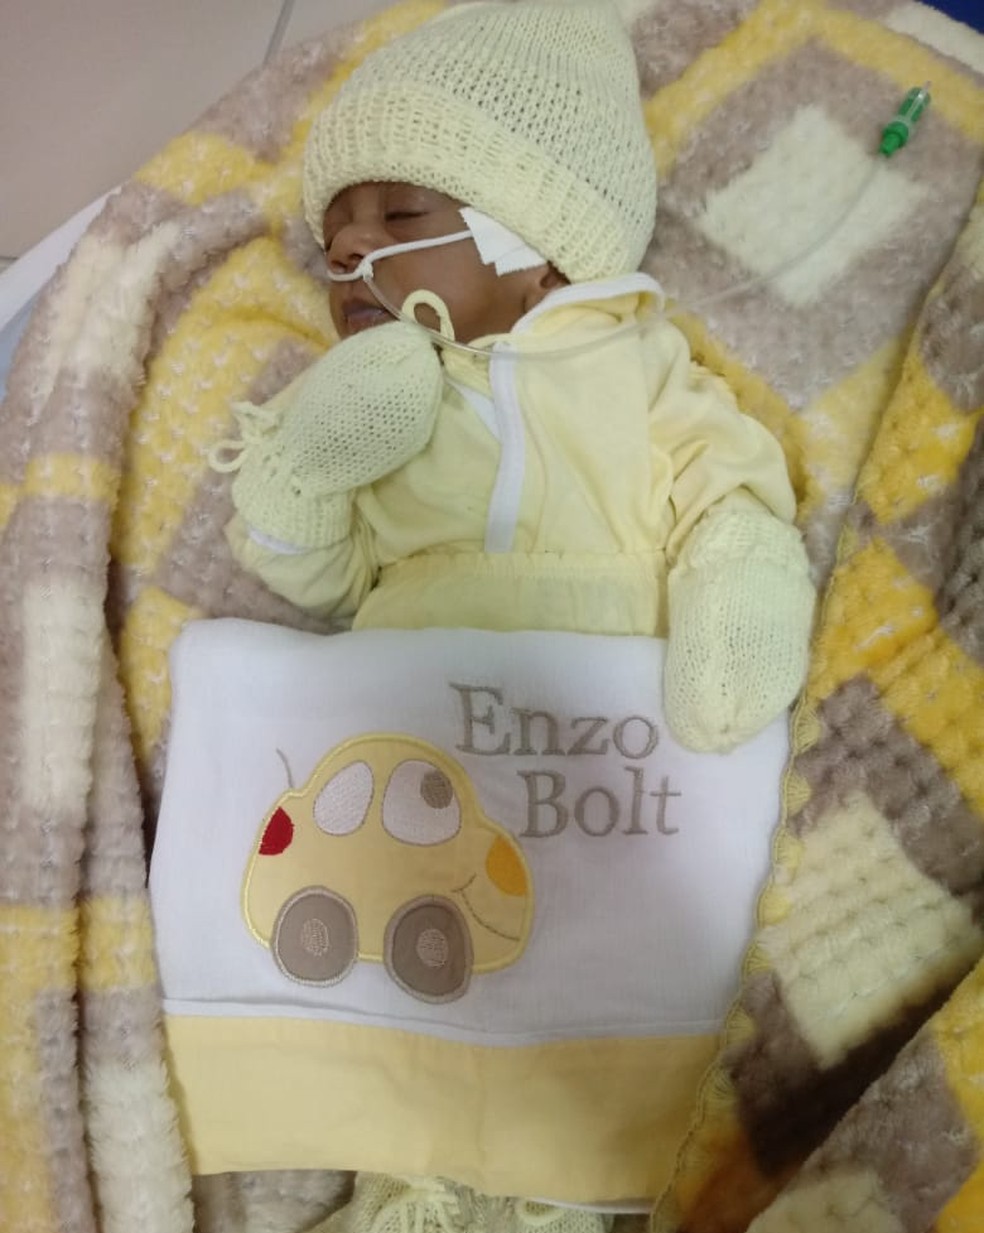 Pequeno Enzo Bolt vai ganhar certidÃ£o de nascimento apÃ³s quatro meses  (Foto: Arquivo da famÃ­lia)